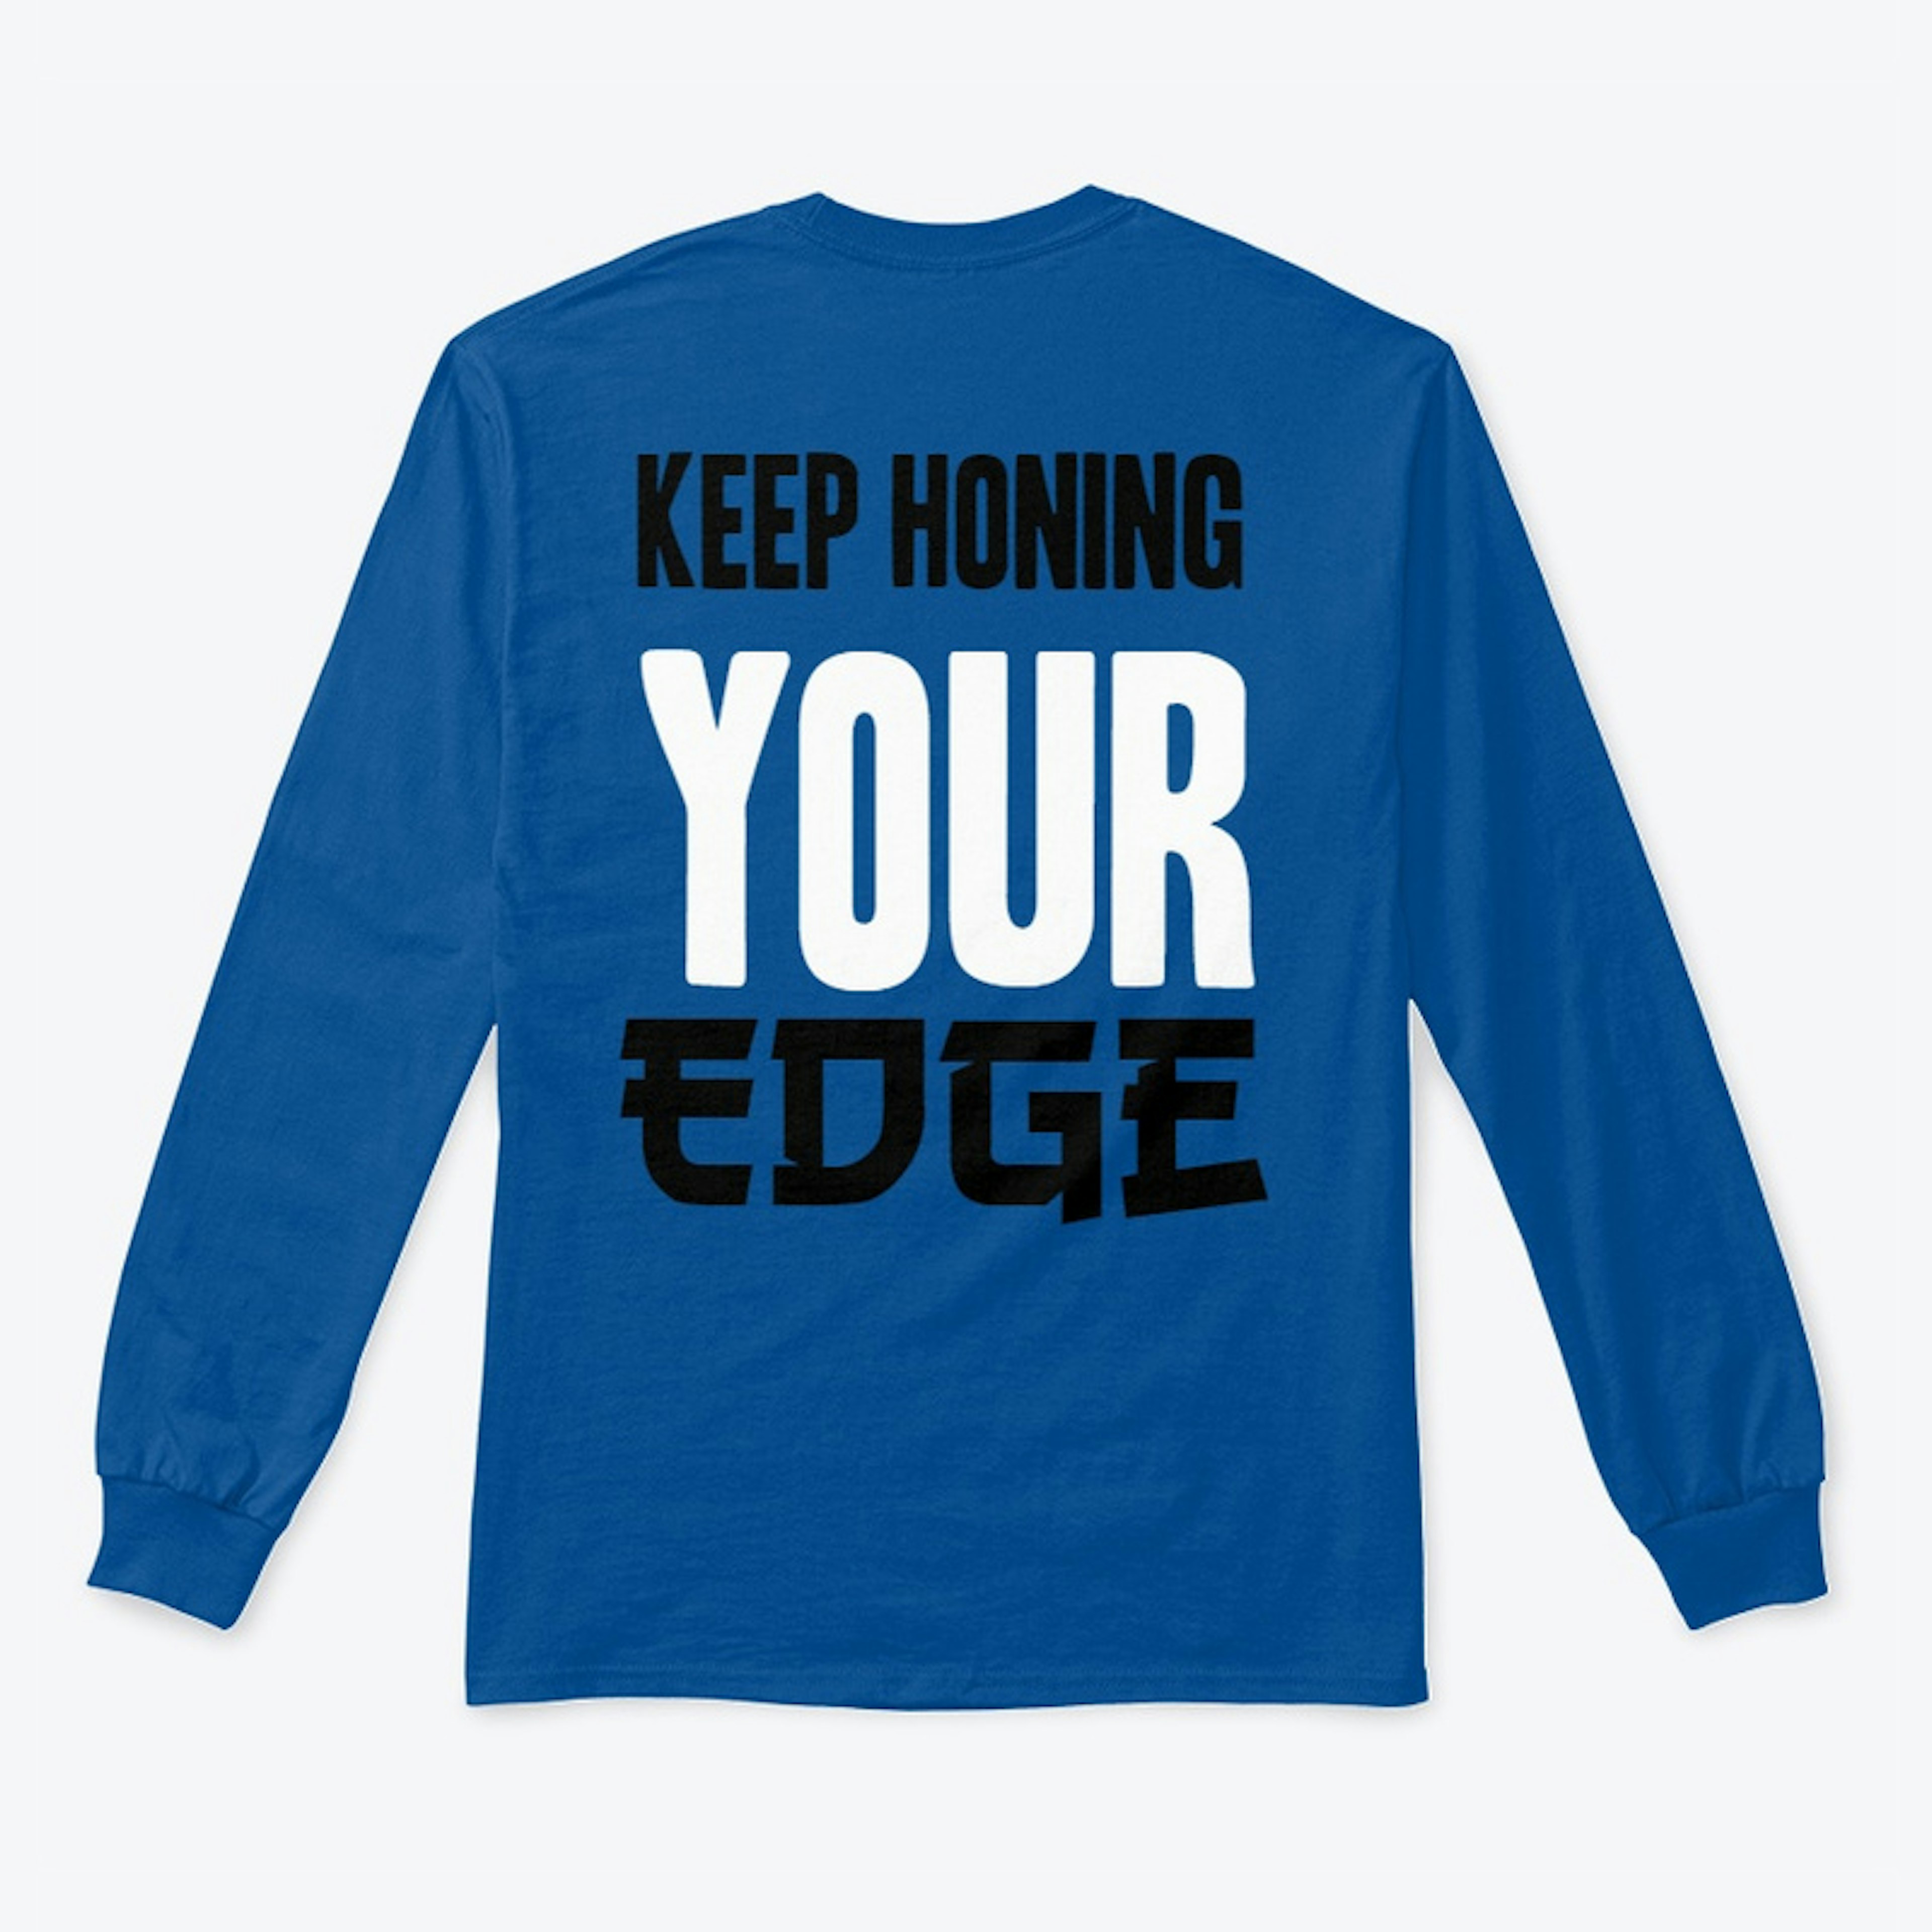 Your Edge